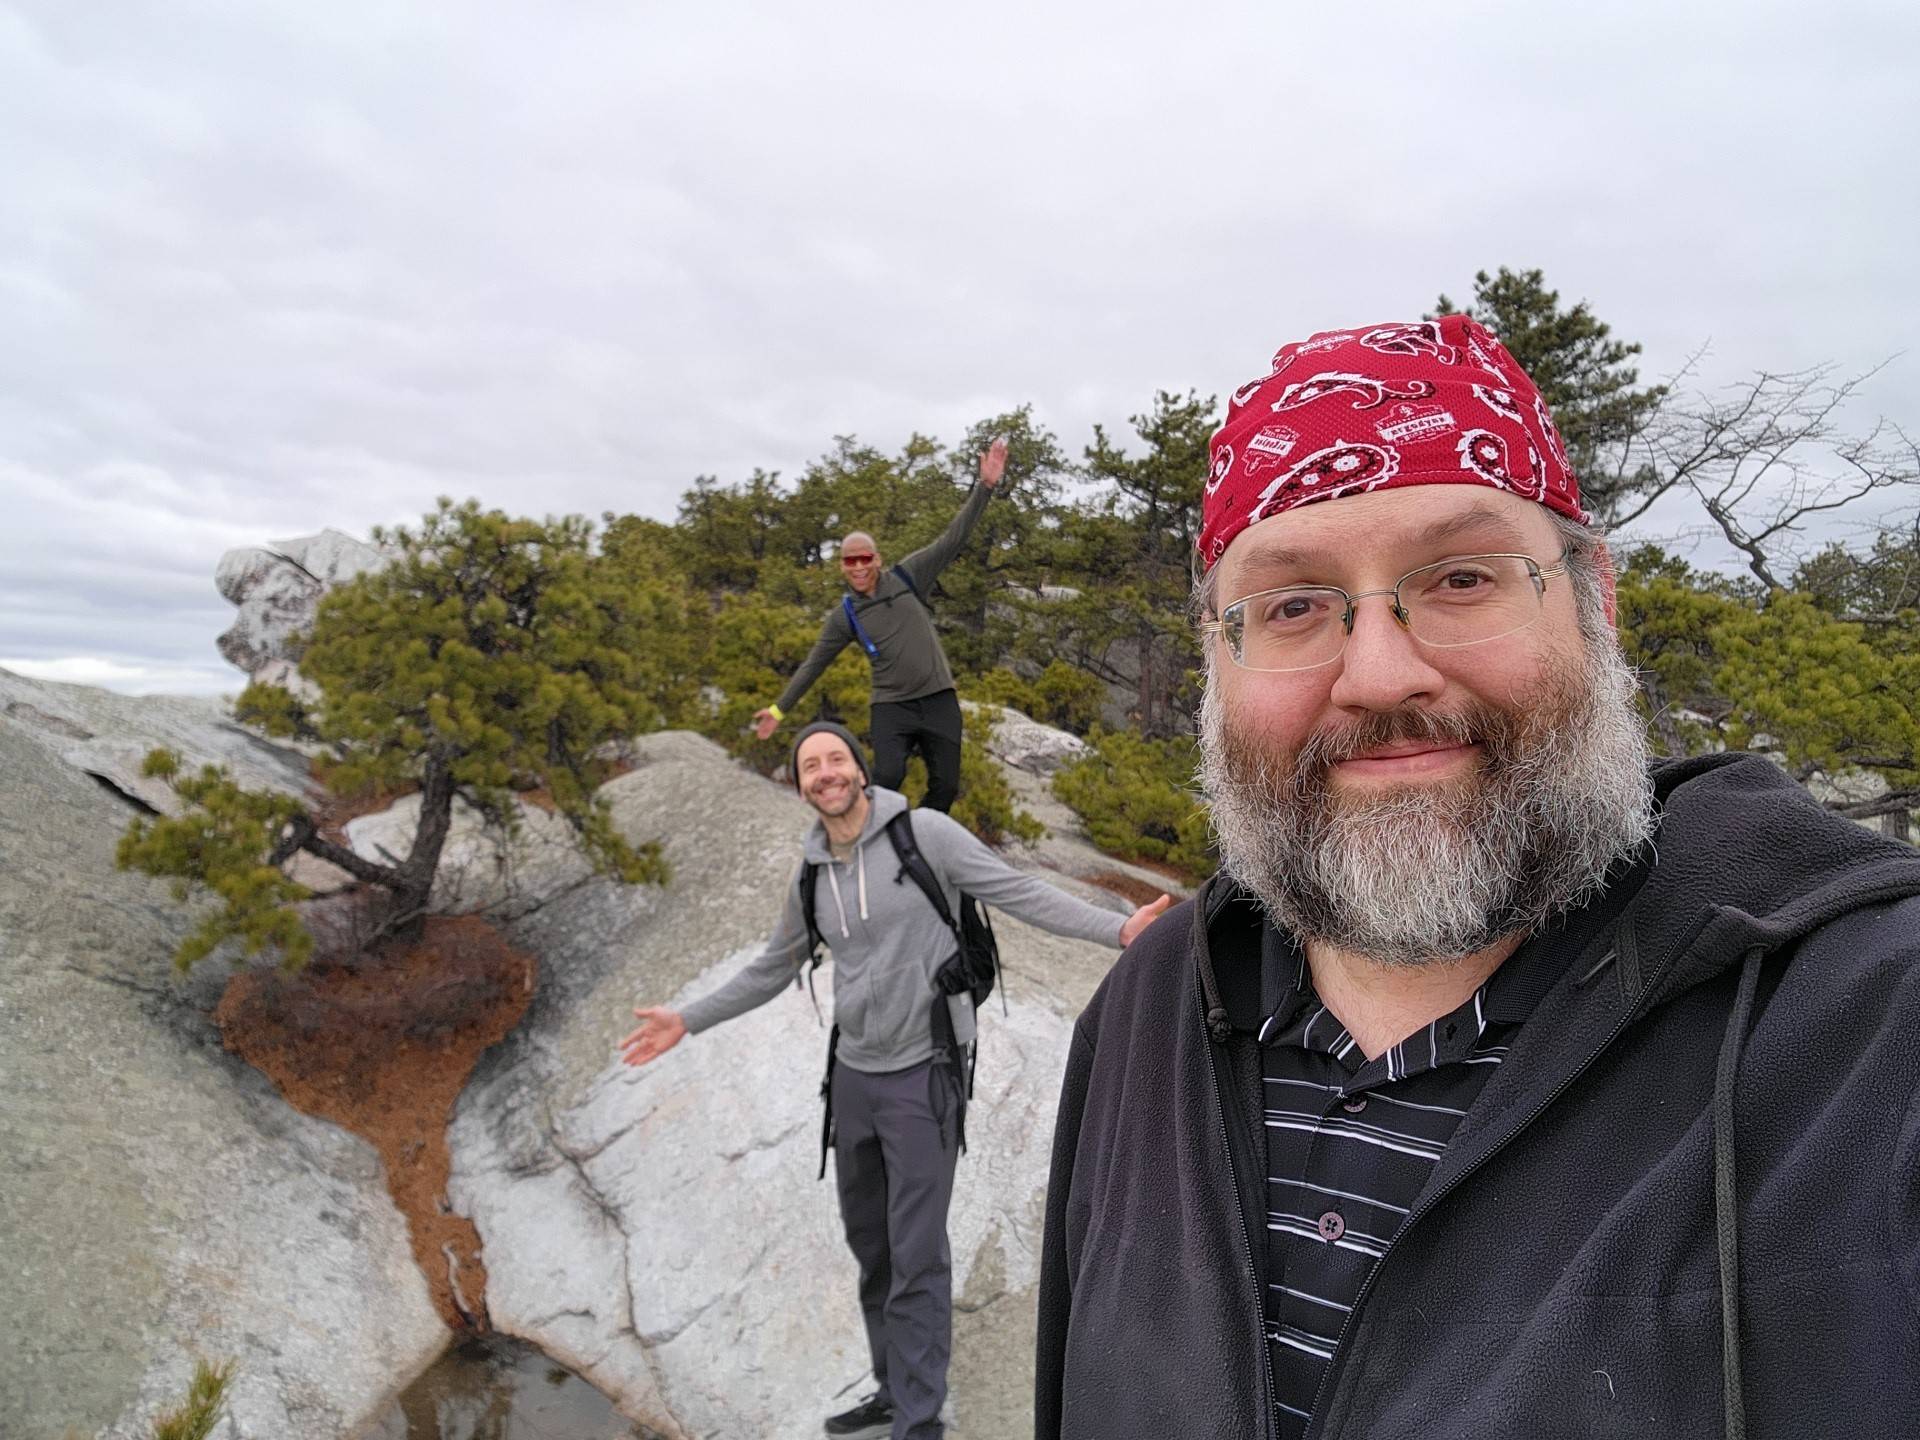 a selfie of three people on rocky terrain